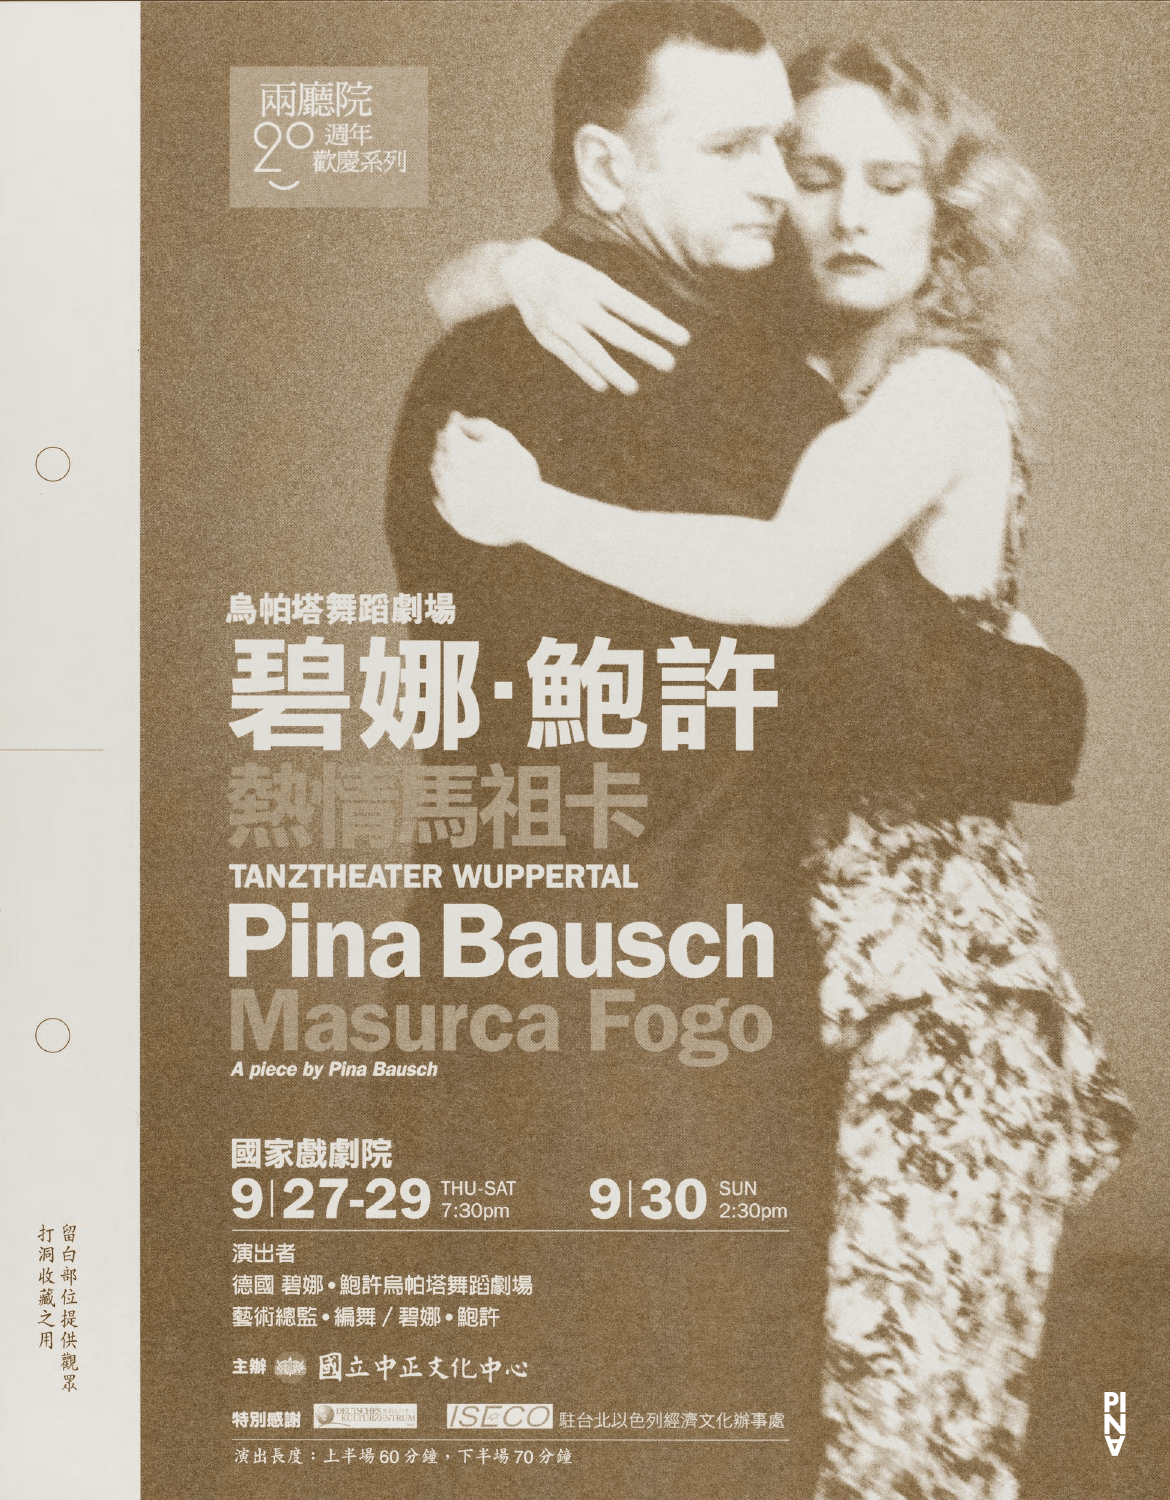 Programmheft zu „Masurca Fogo“ von Pina Bausch mit Tanztheater Wuppertal in Taipeh, 27.09.2007–30.09.2007